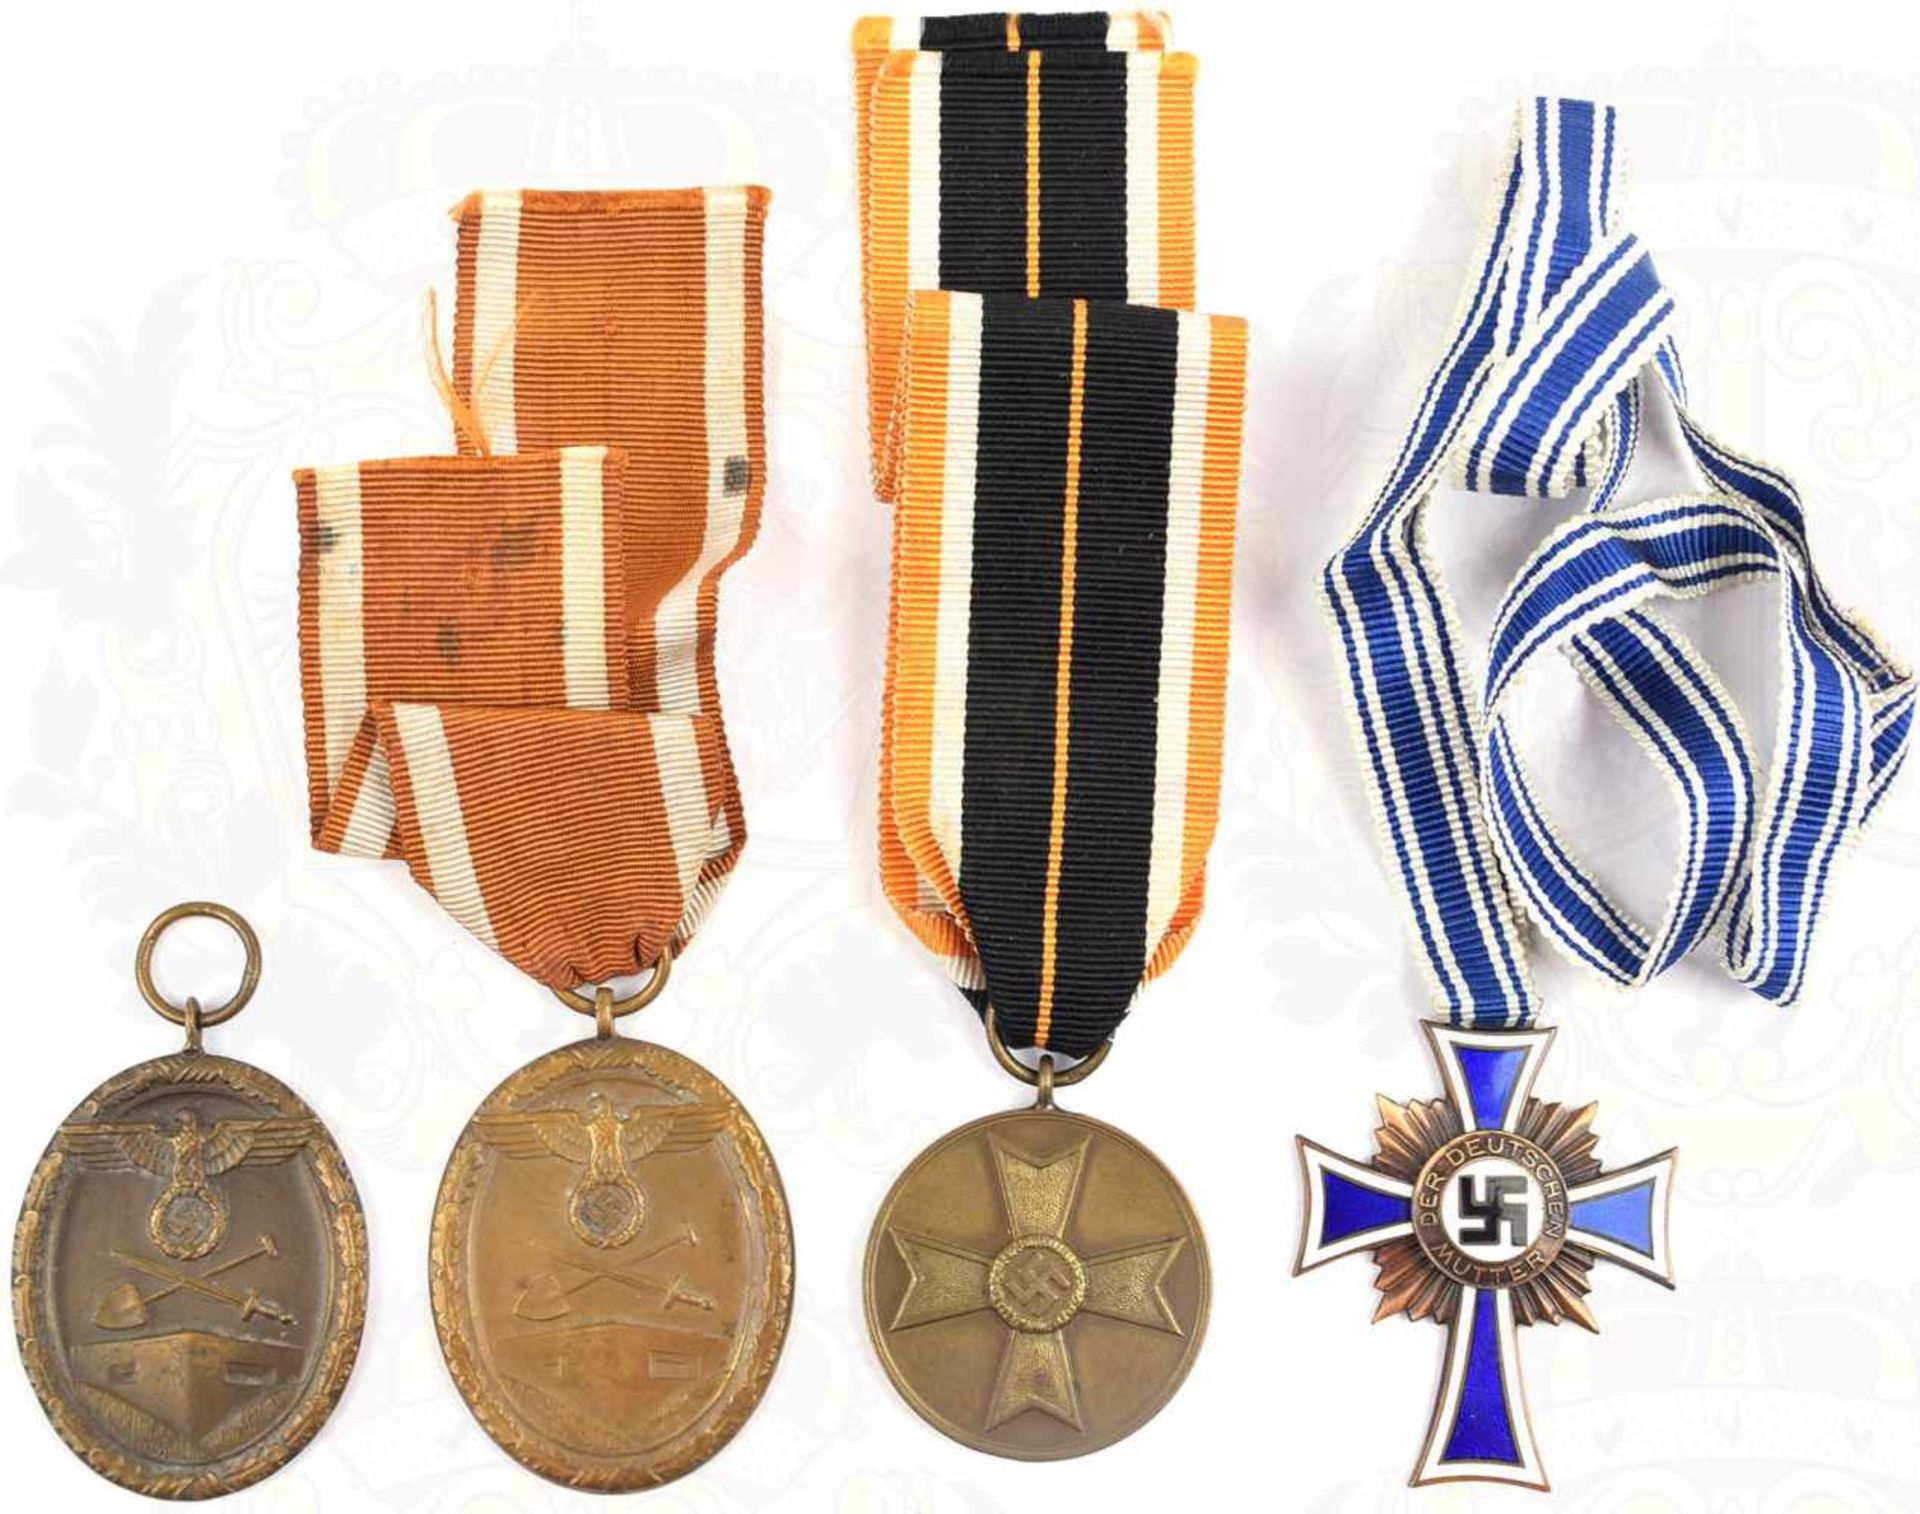 4 EHRENZEICHEN, 2 Deutsche Schutzwall-Ehrenzeichen, Bronze, 1x am Band; Mutterkreuz in Bronze 2.